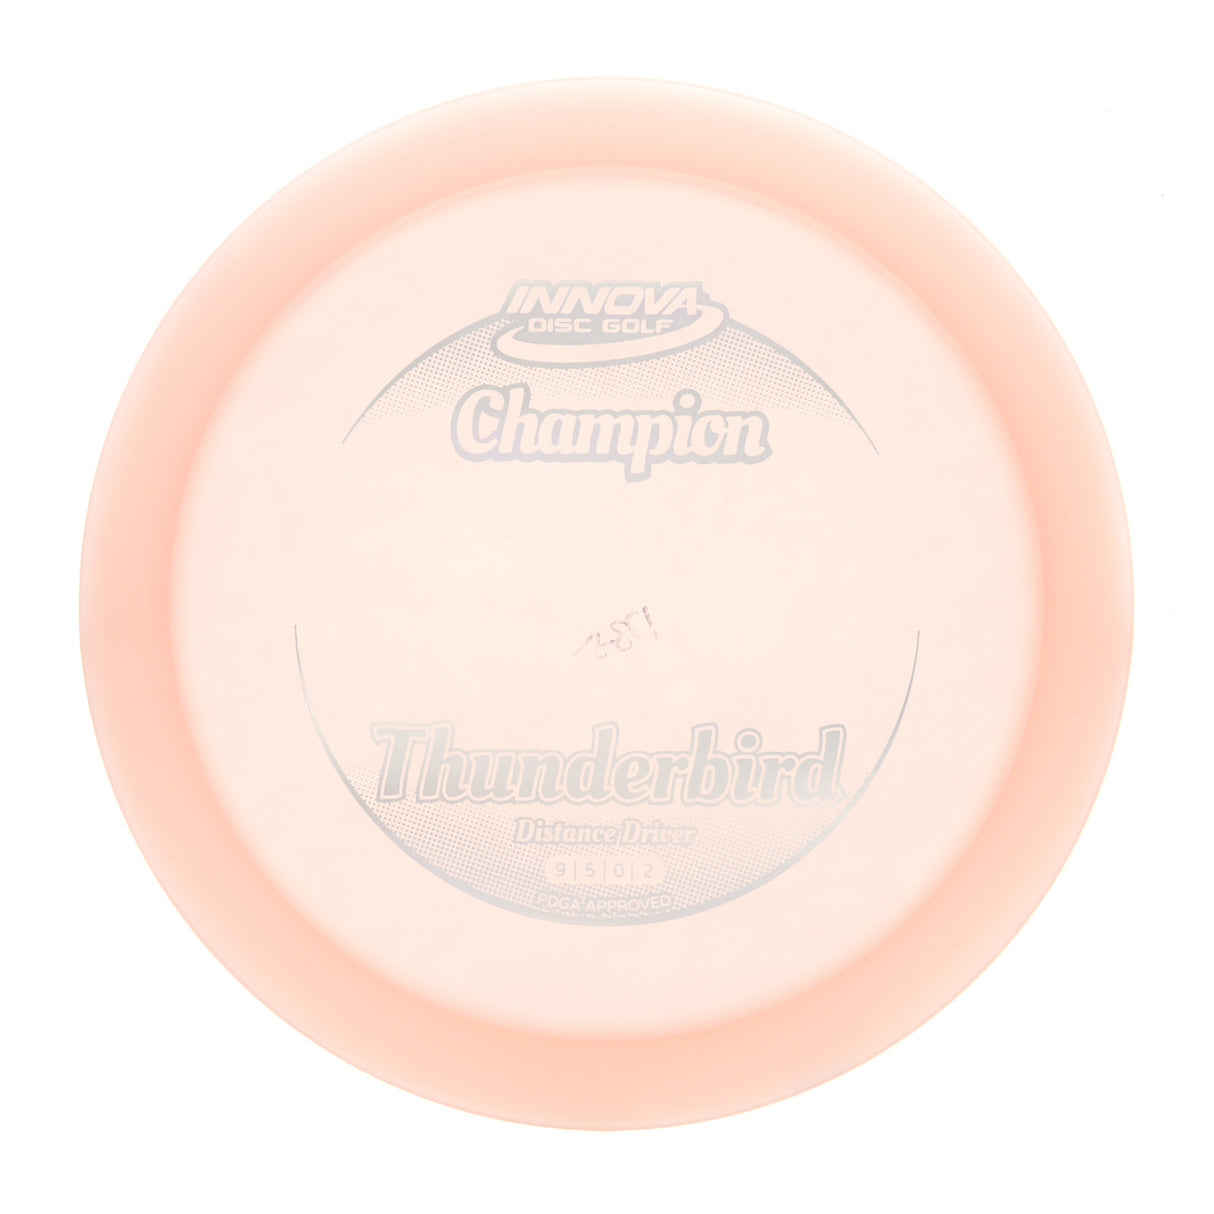 Innova Thunderbird - Champion 175g | Style 0006